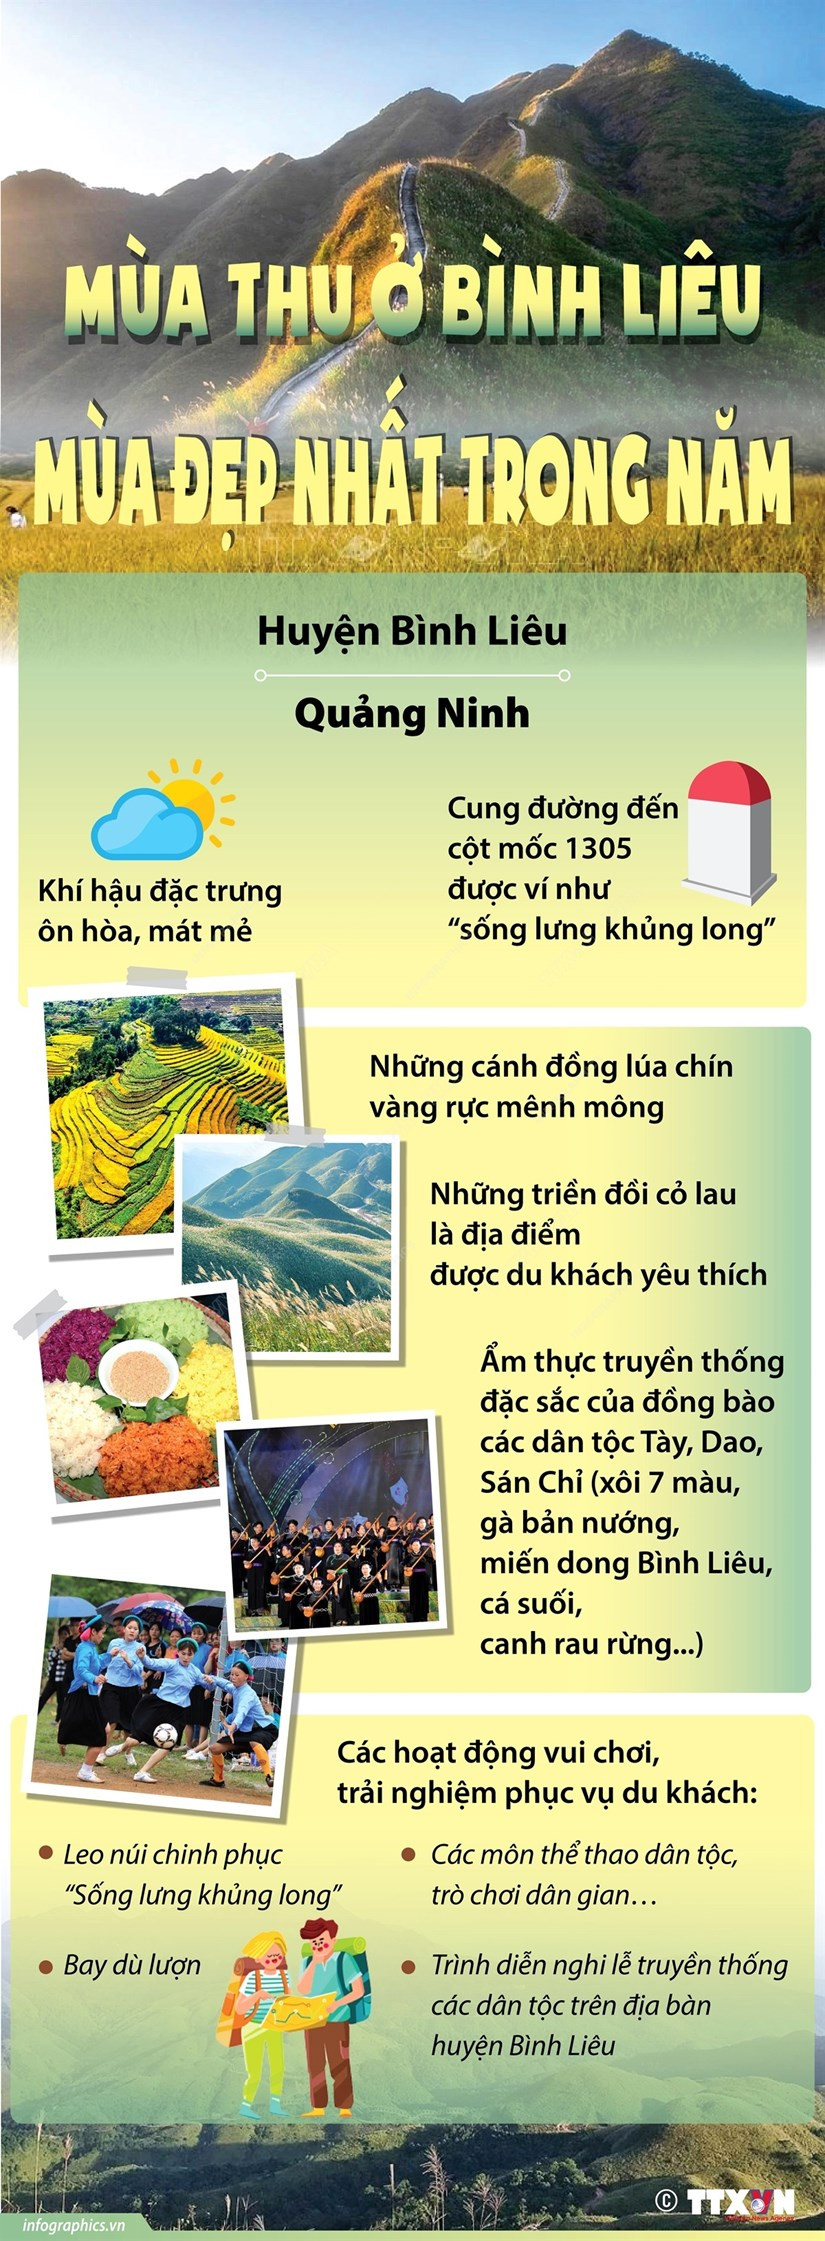 [Infographics] Mua Thu o Binh Lieu: Mua dep nhat trong nam hinh anh 1